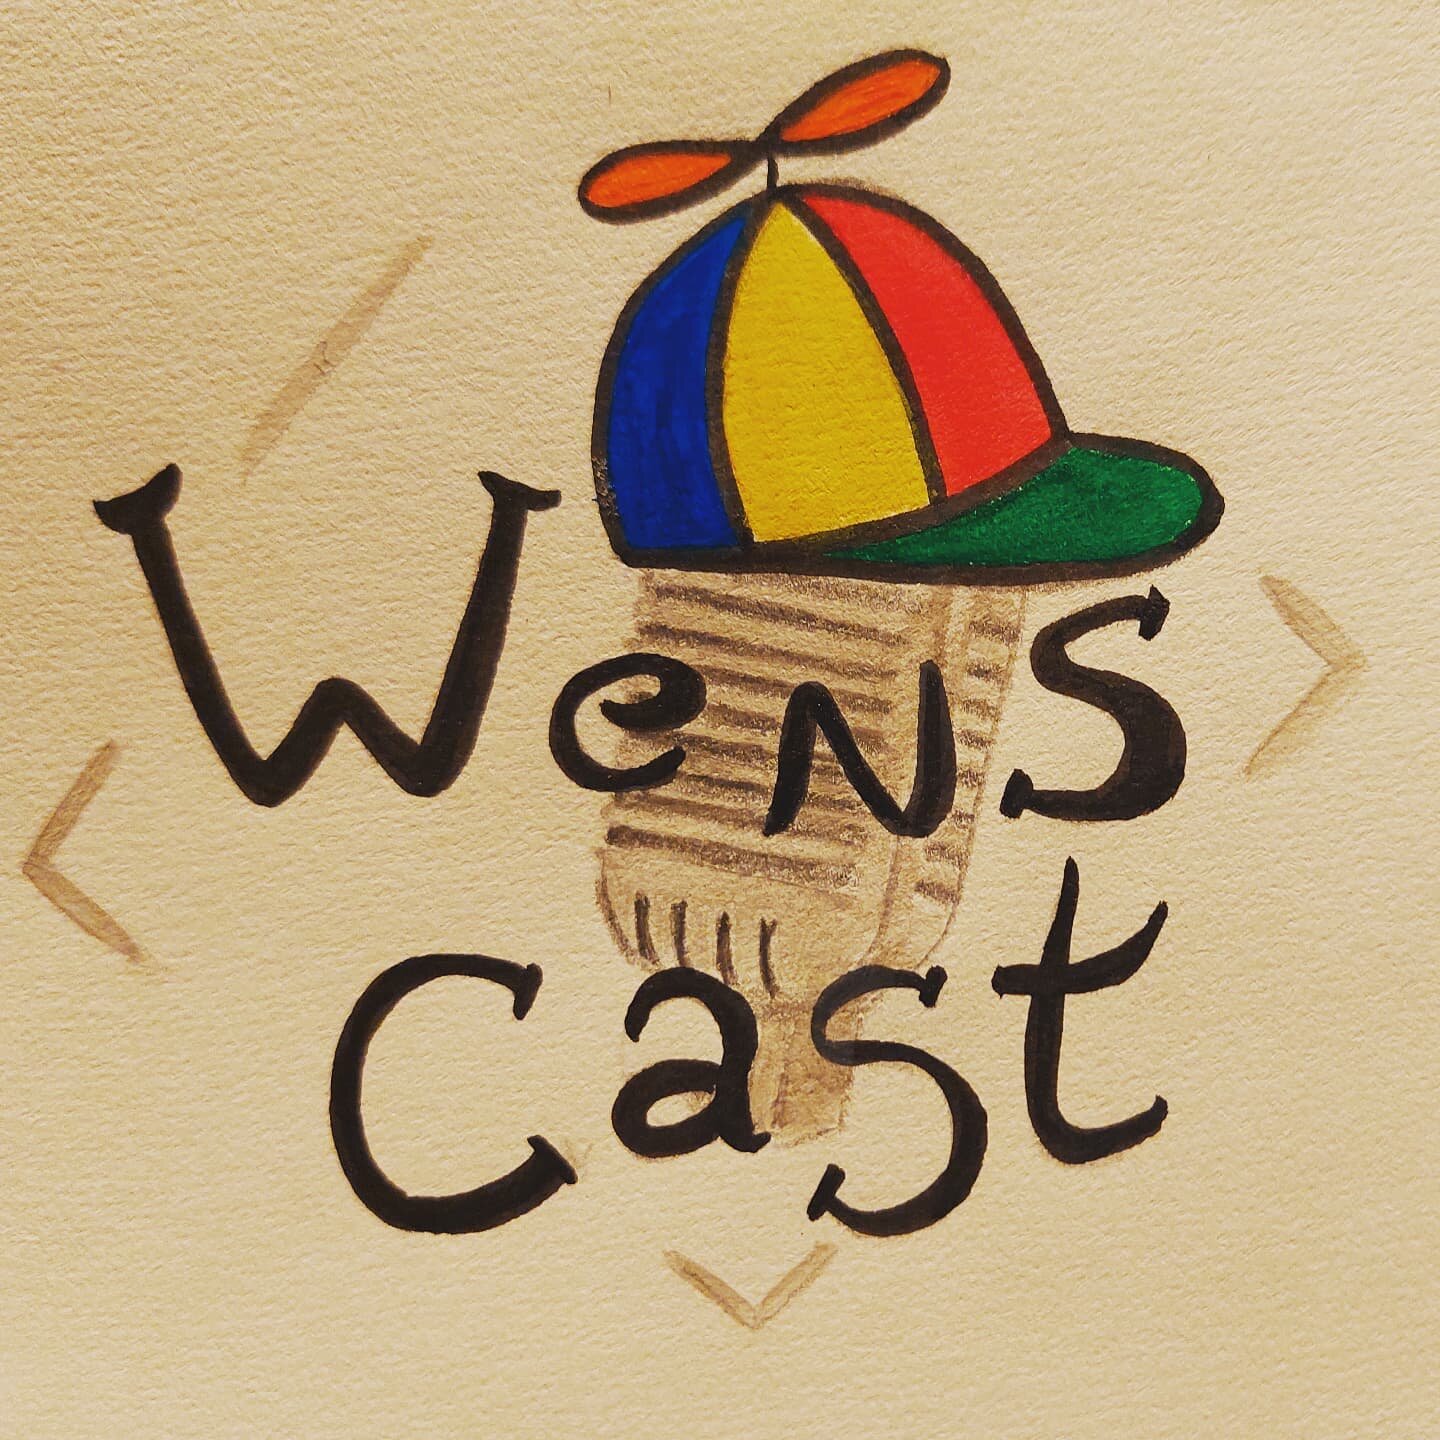 Release staat voor de deur!

Over enkele dagen kunnen jullie via dit logo herkennen waar die Wenspodcast ofte Wenscast te vinden is. 

Check wensmens.be

Tot dan wensen wij jullie rust in het hoofd, vrede in het hart en een gebalanceerd gemoed.

🍀💫